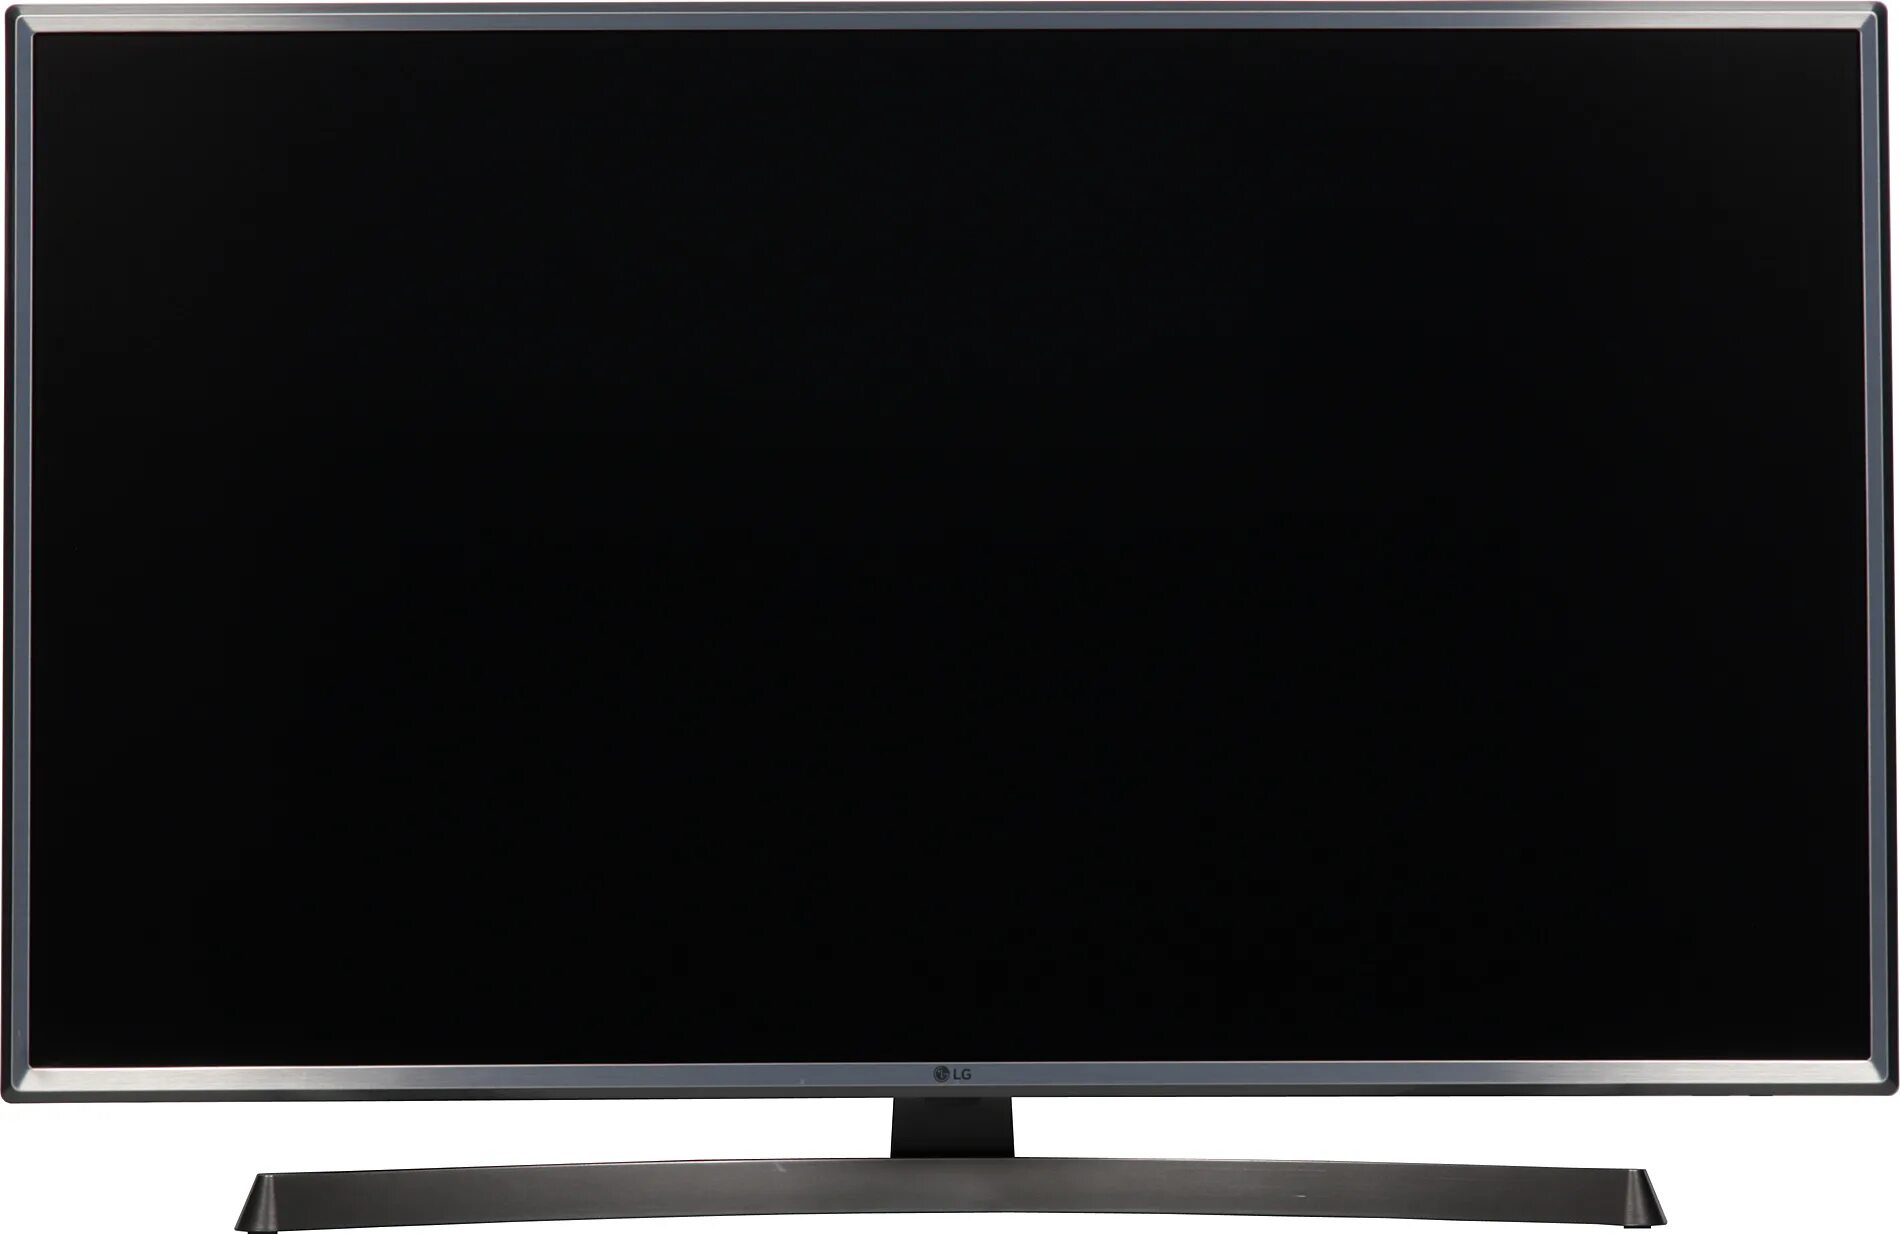 Телевизор 43 ips. Телевизор LG 43 IPS С металлической рамкой. Телевизор 43 дюйма с металлической рамкой. Телевизор LG 43 металлическая рамка. Диагональ 43.